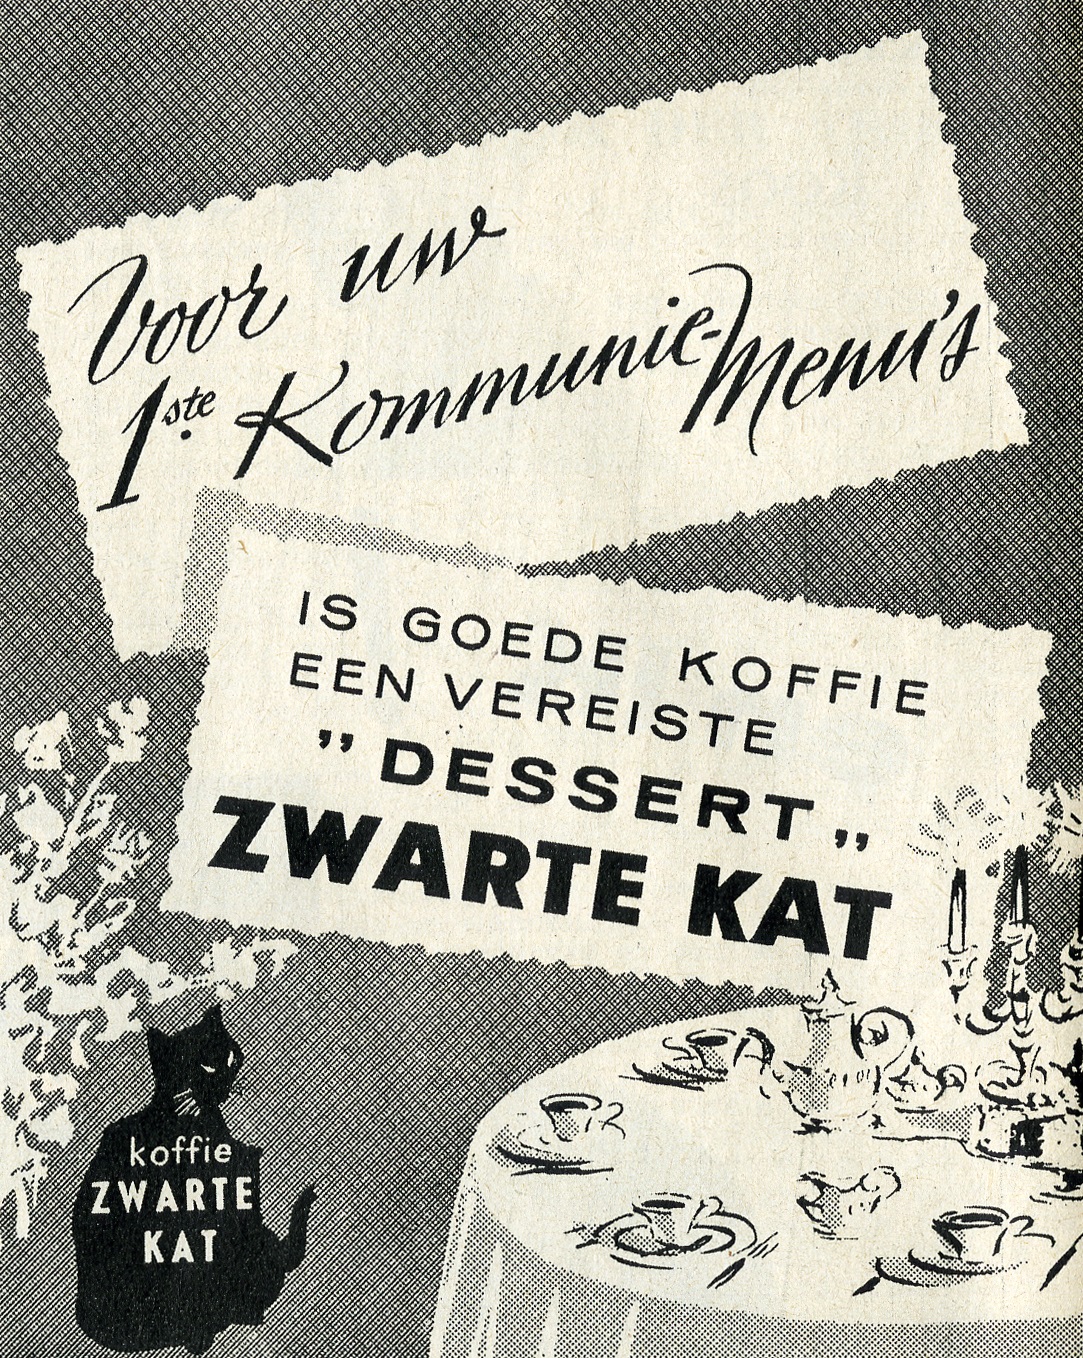 Reclame voor Koffie Zwarte Kat uit de jaren 1950. Collectie Huis van Alijn, Gent.